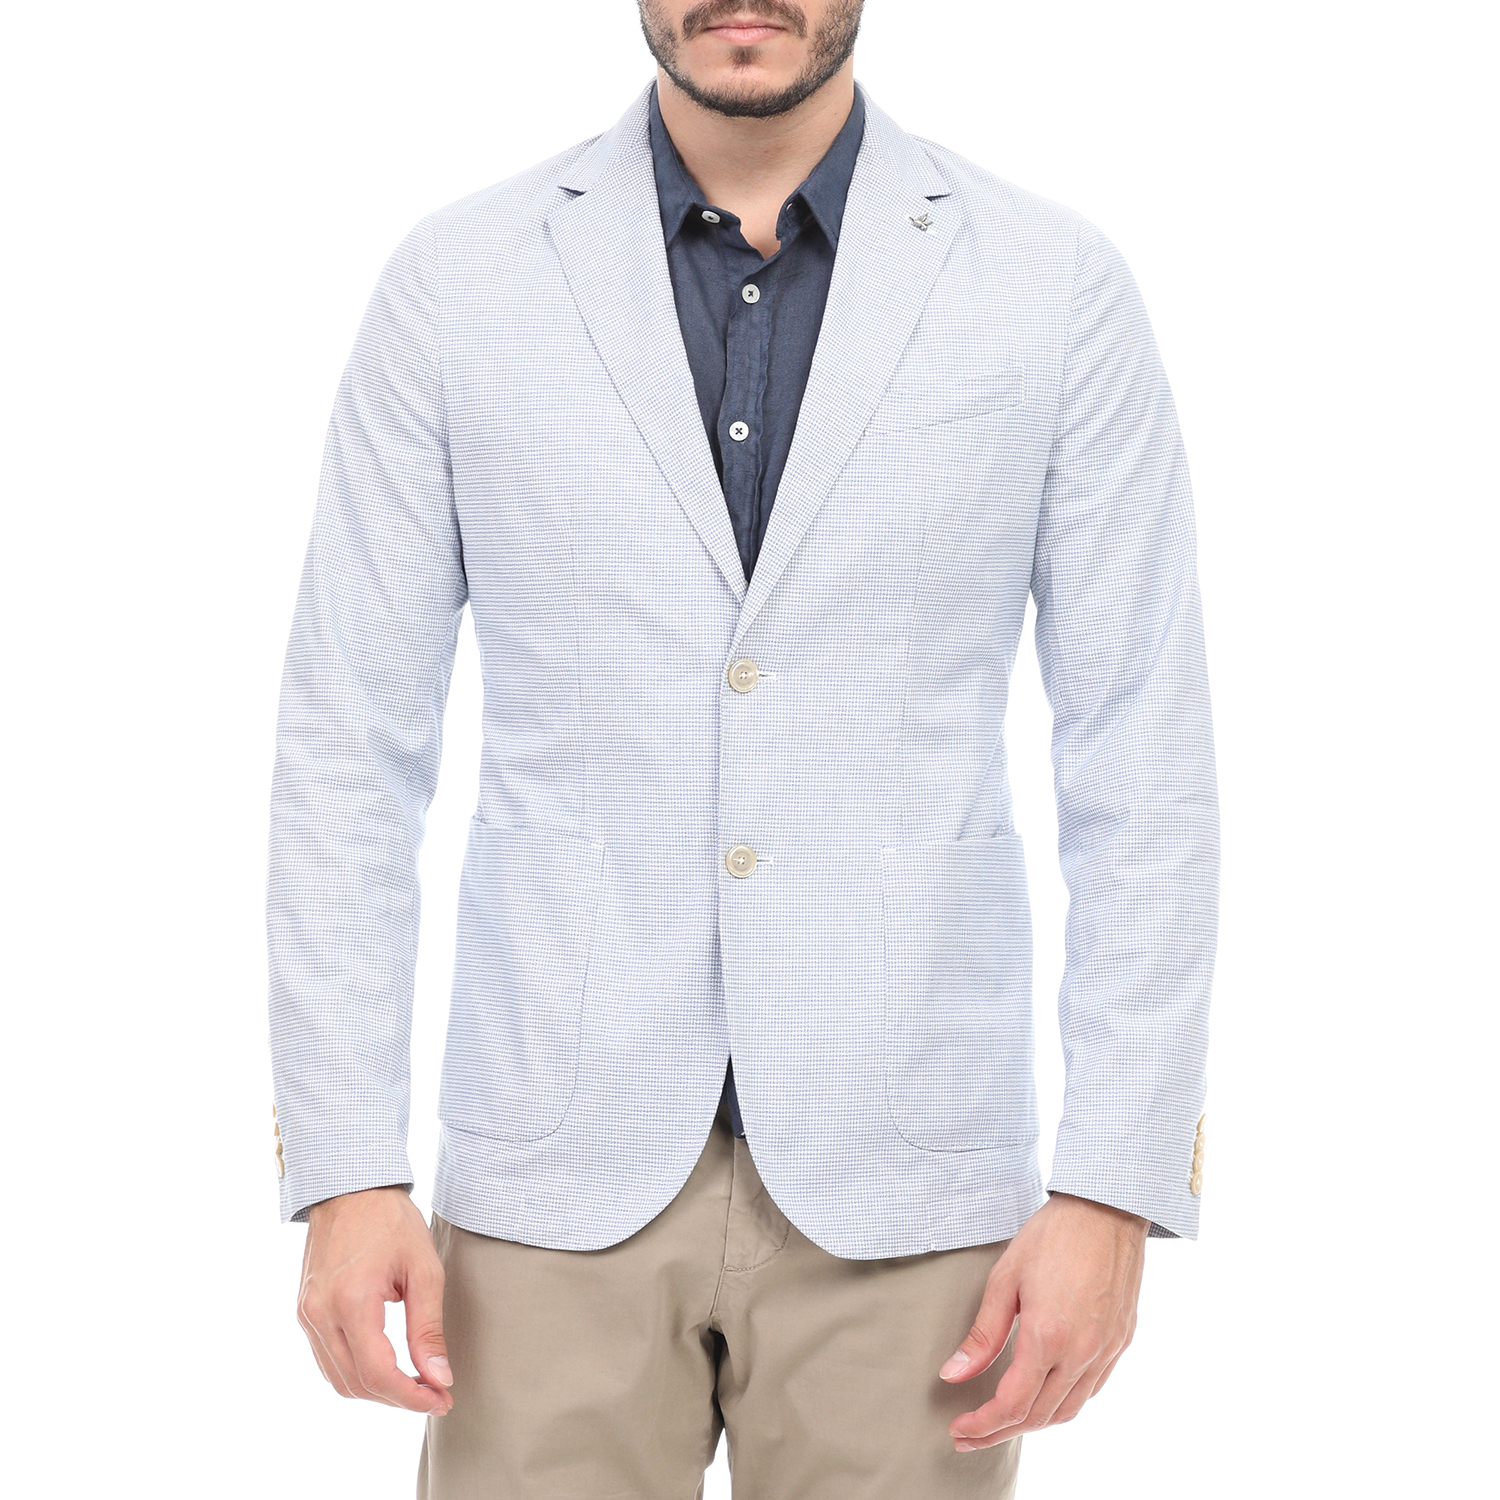 BROOKSFIELD - Ανδρικό σακάκι blazer BROOKSFIELD λευκό μπλε Ανδρικά/Ρούχα/Πανωφόρια/Σακάκια